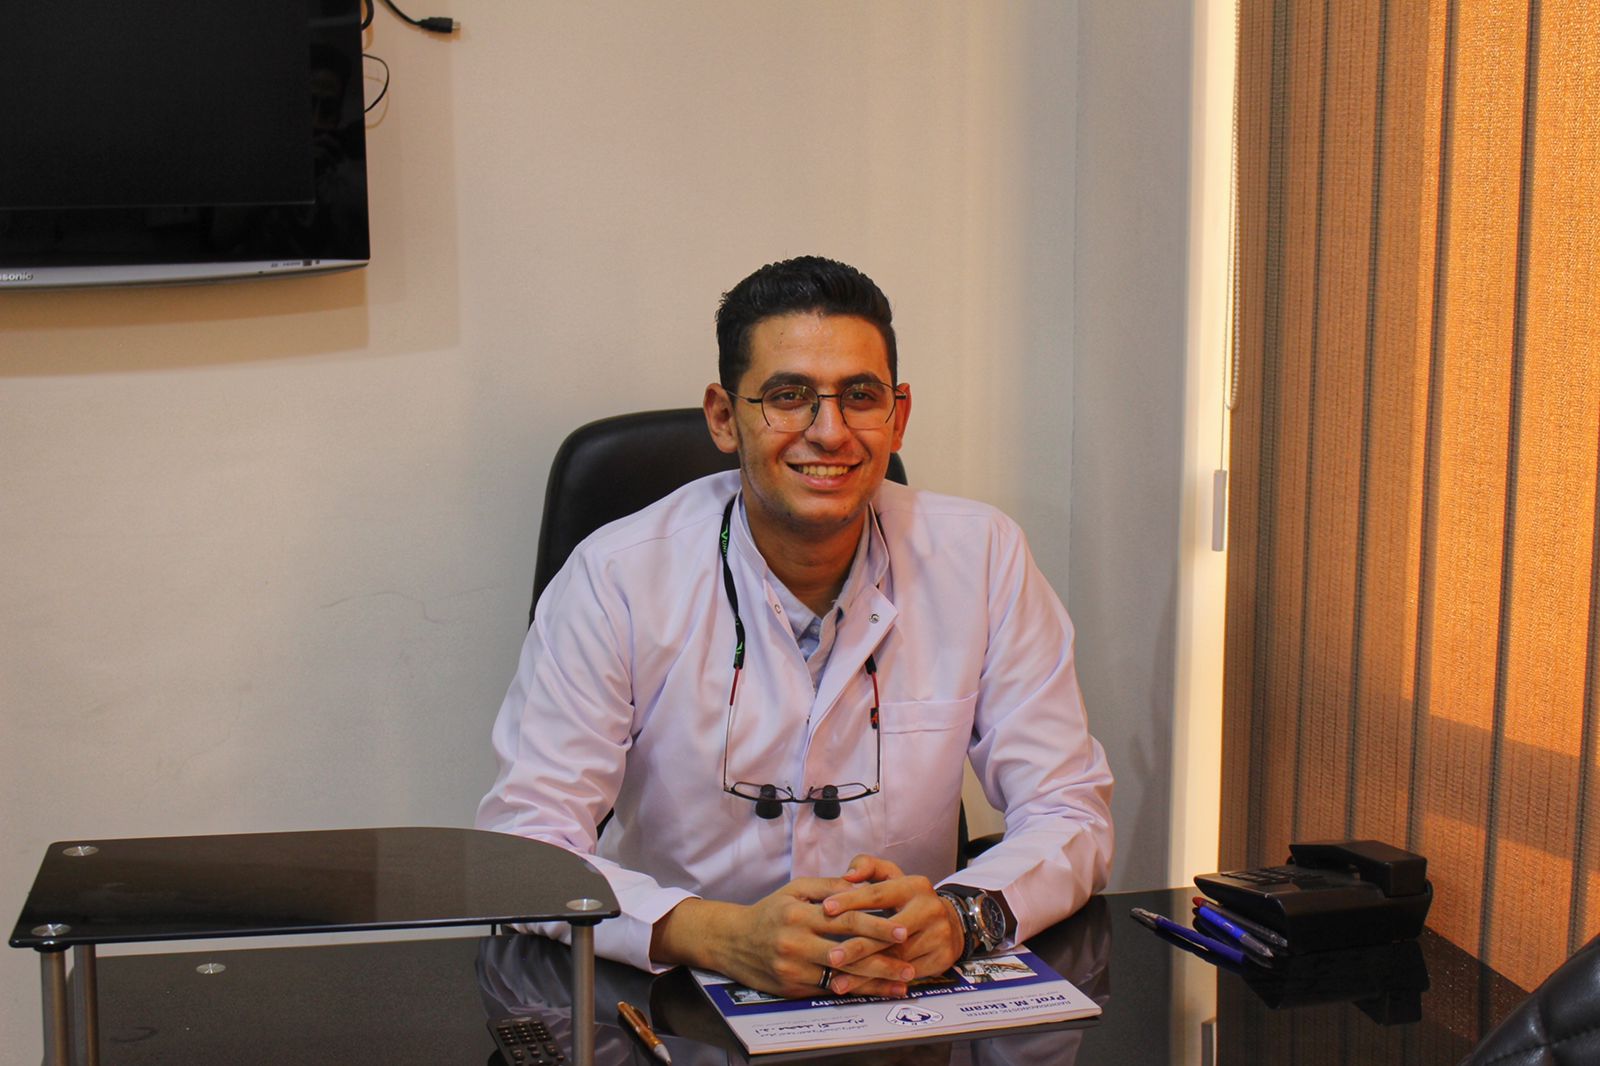 Dr. Ahmed farouk el kelany